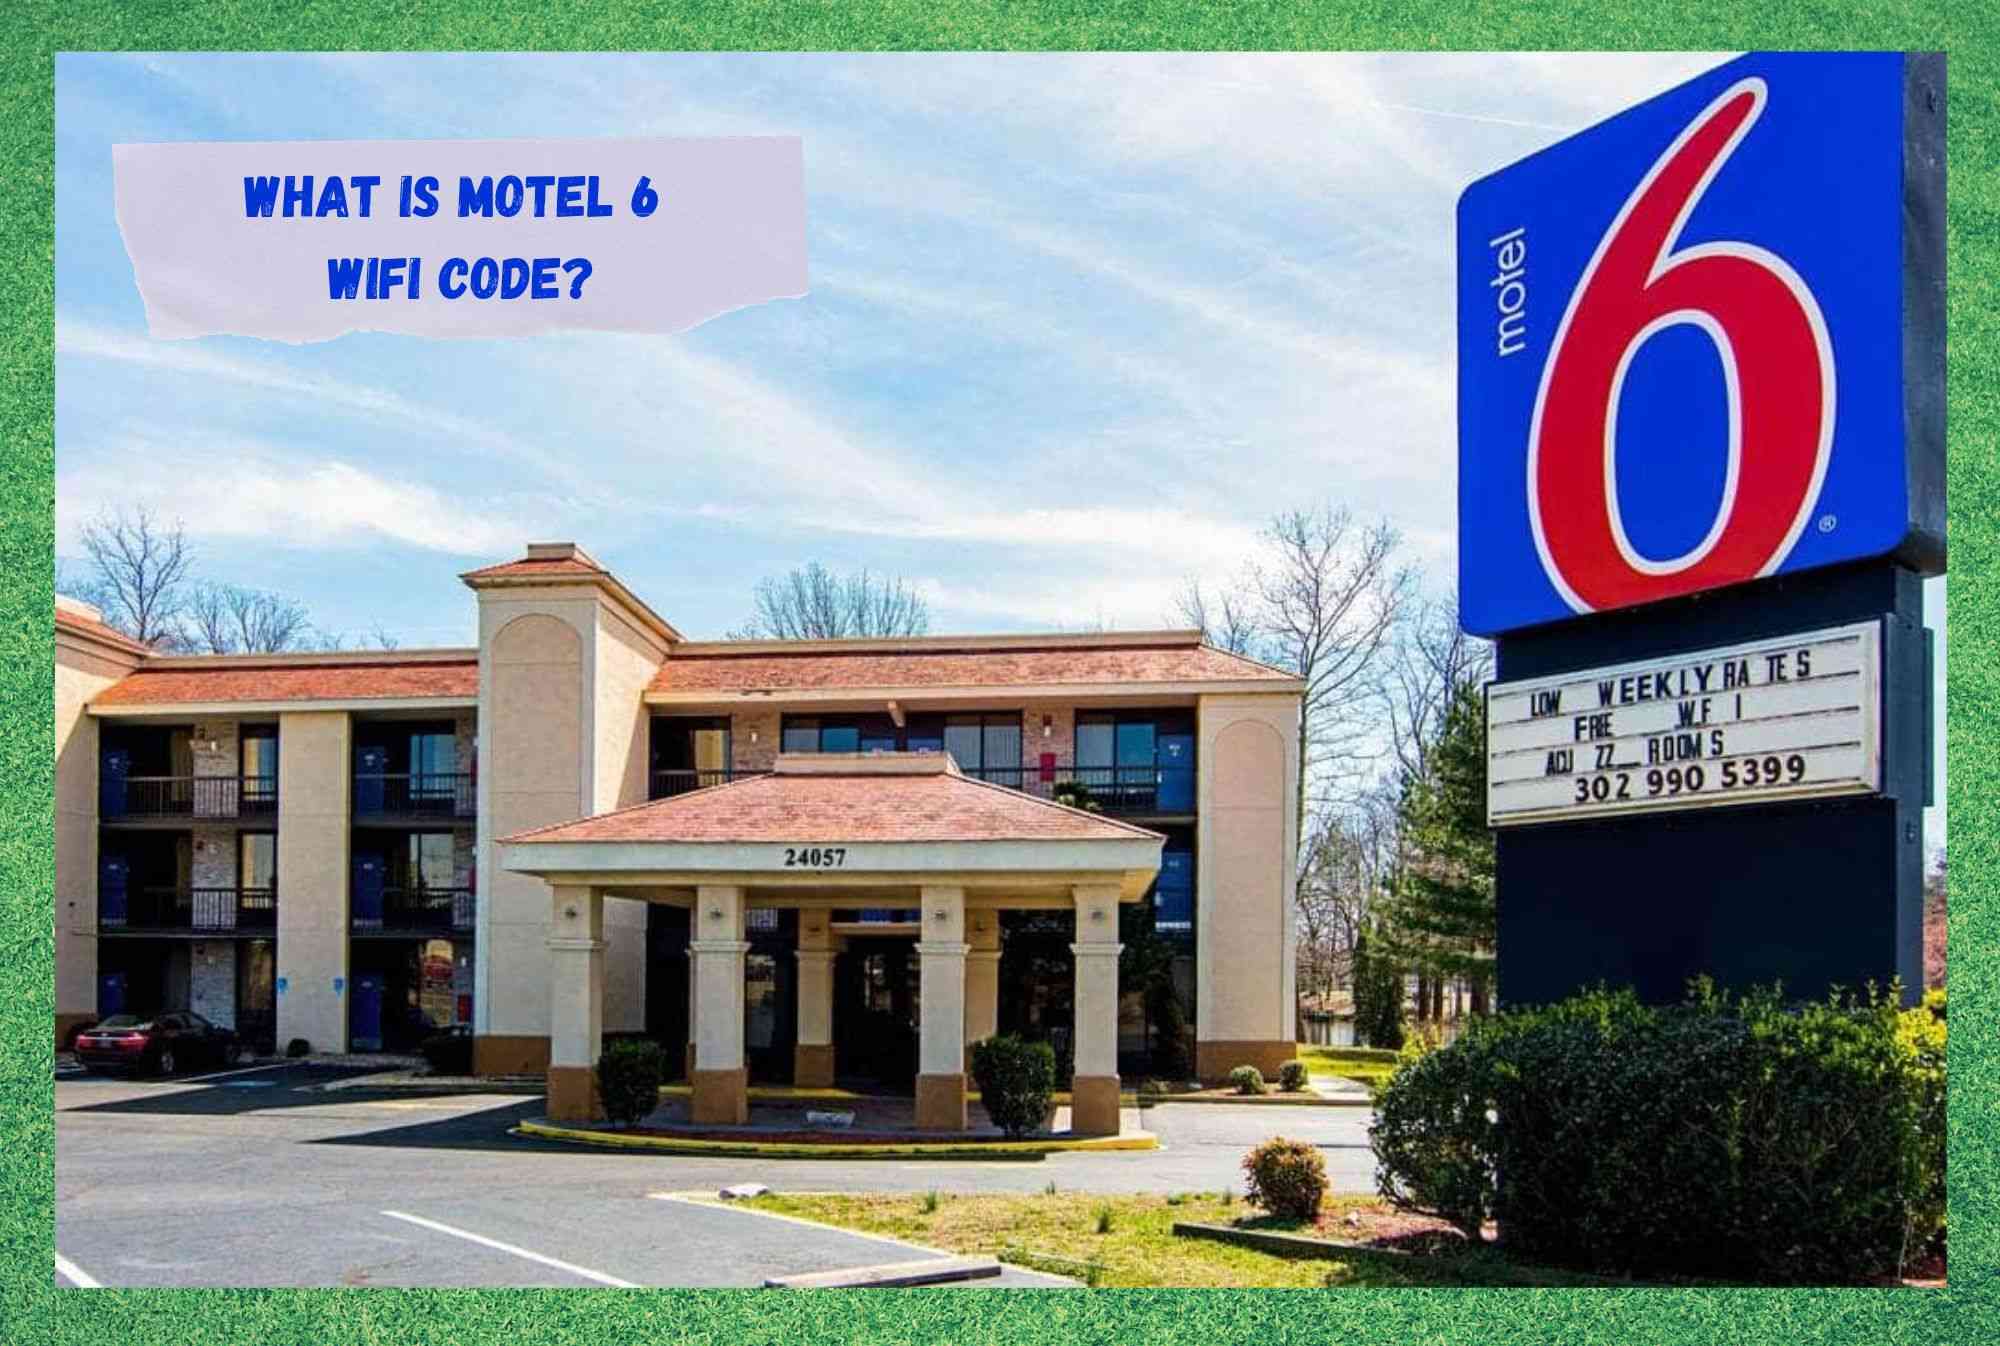 Motel 6 WiFi коды дегеніміз не?